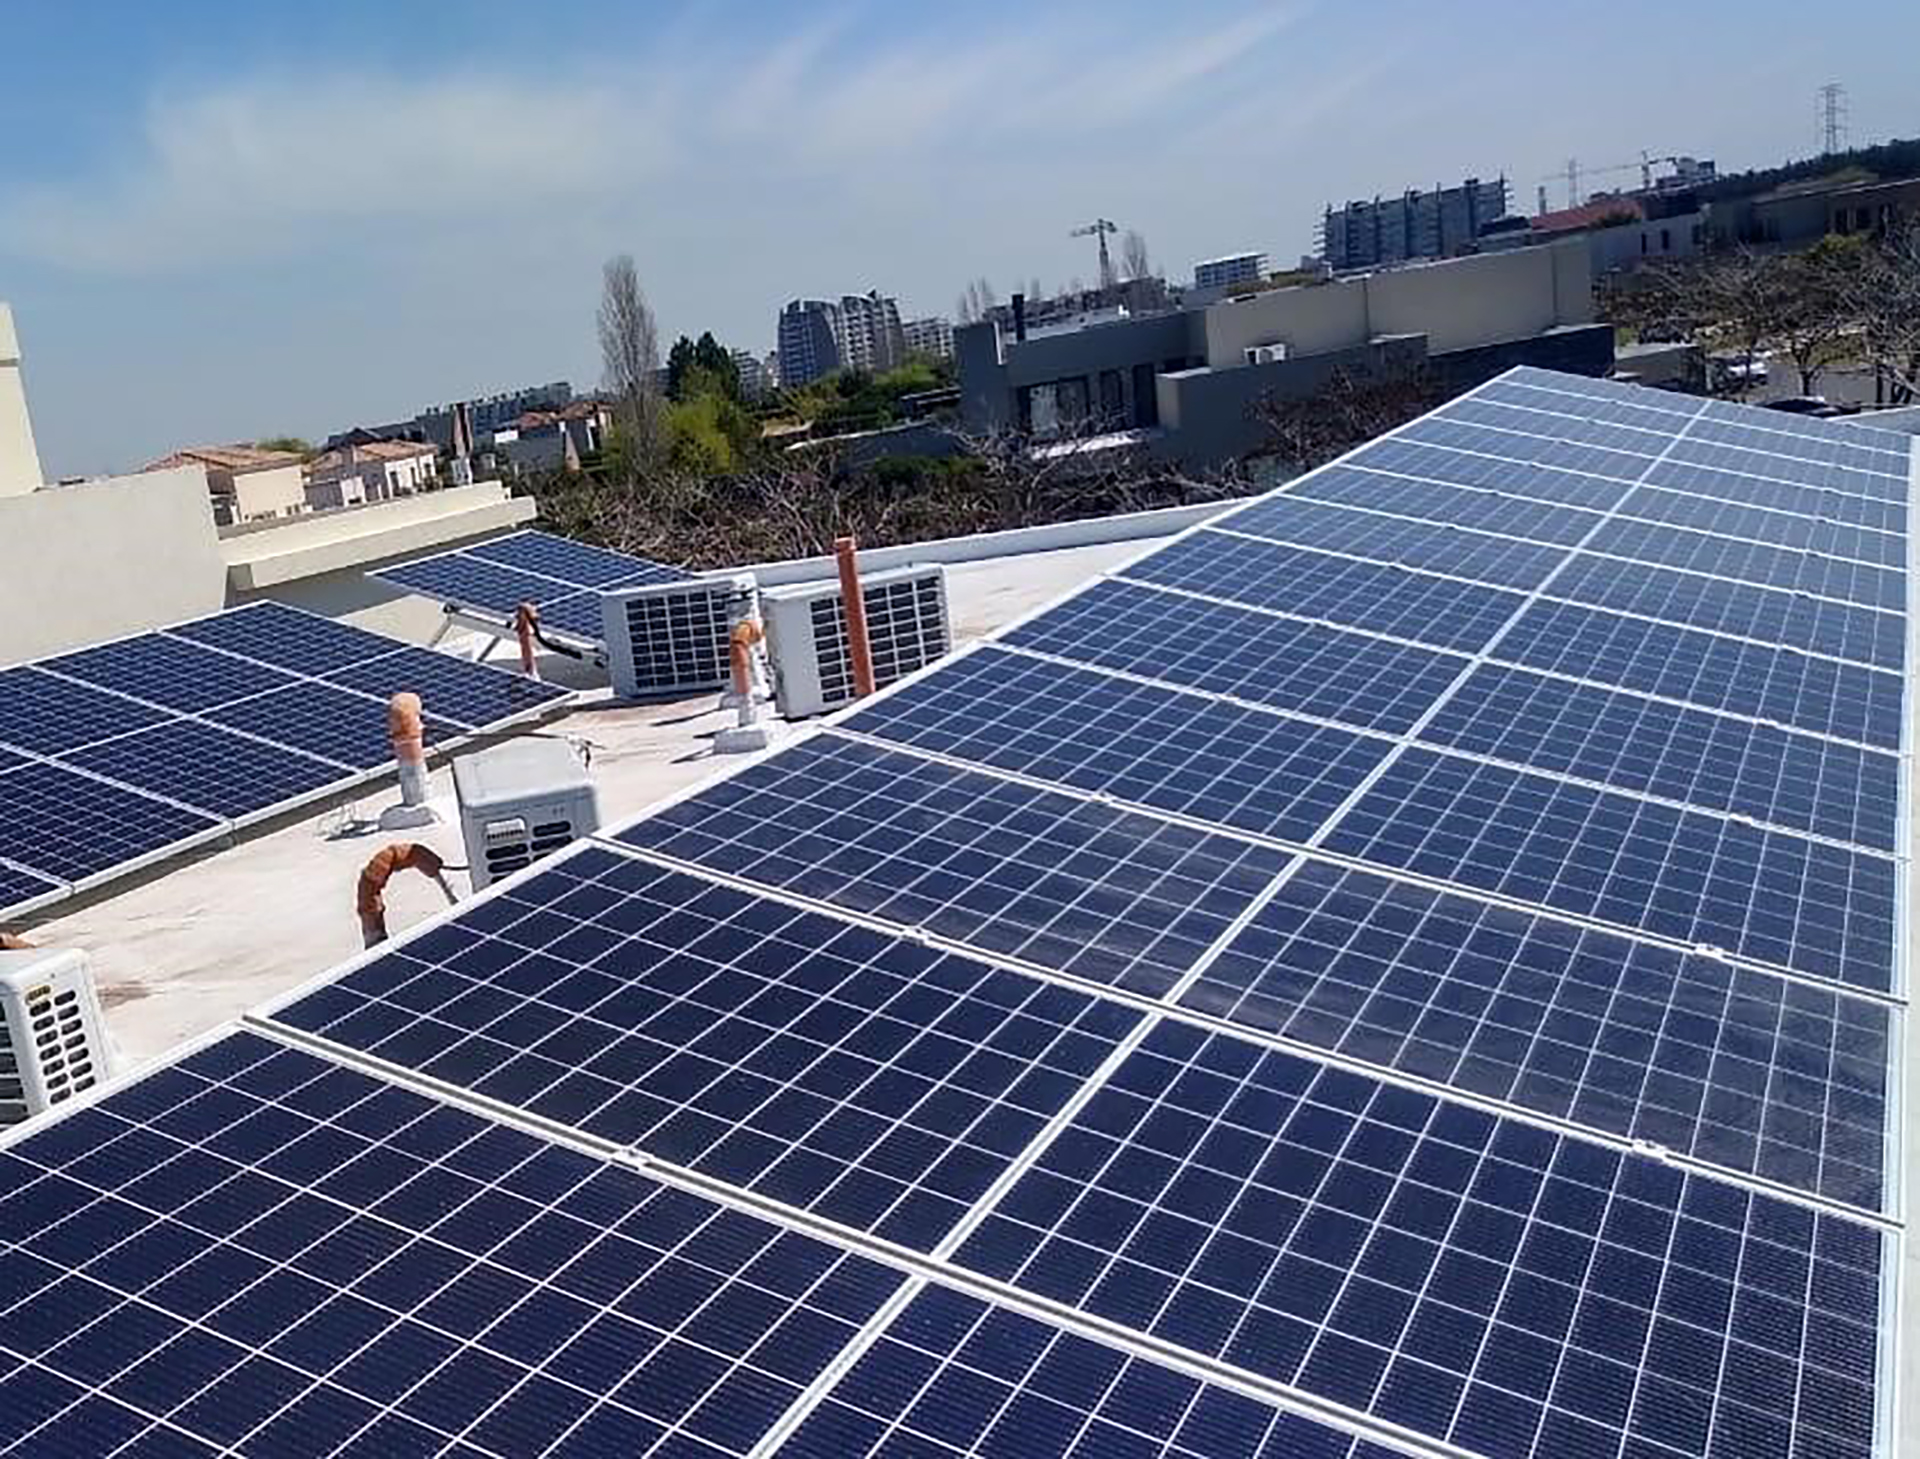 Paneles solares en la casa: ¿aporta al valor de la vivienda o sólo influye  en el ahorro energético? - Infobae